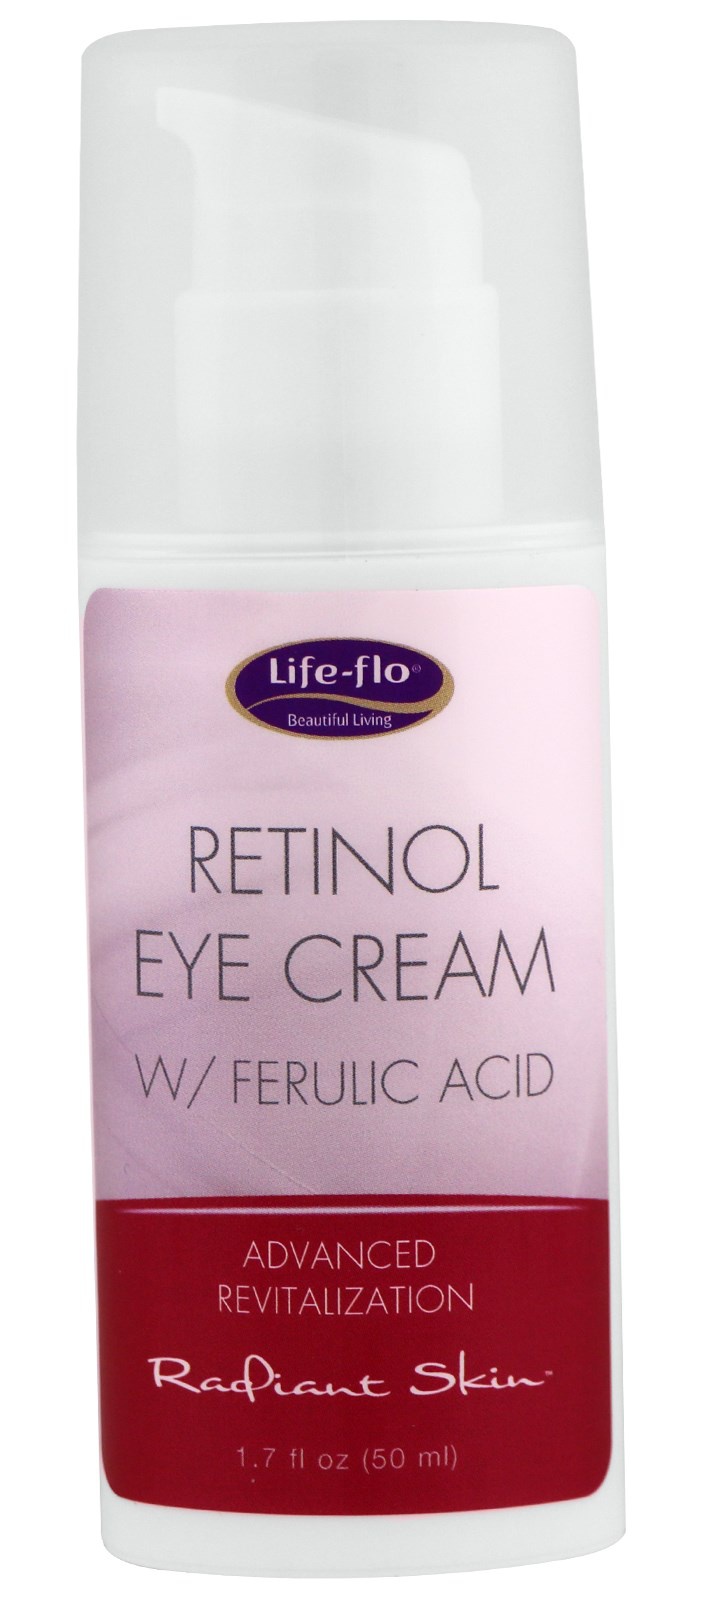 Life-flo Retinol Eye Cream With Ferulic Acid